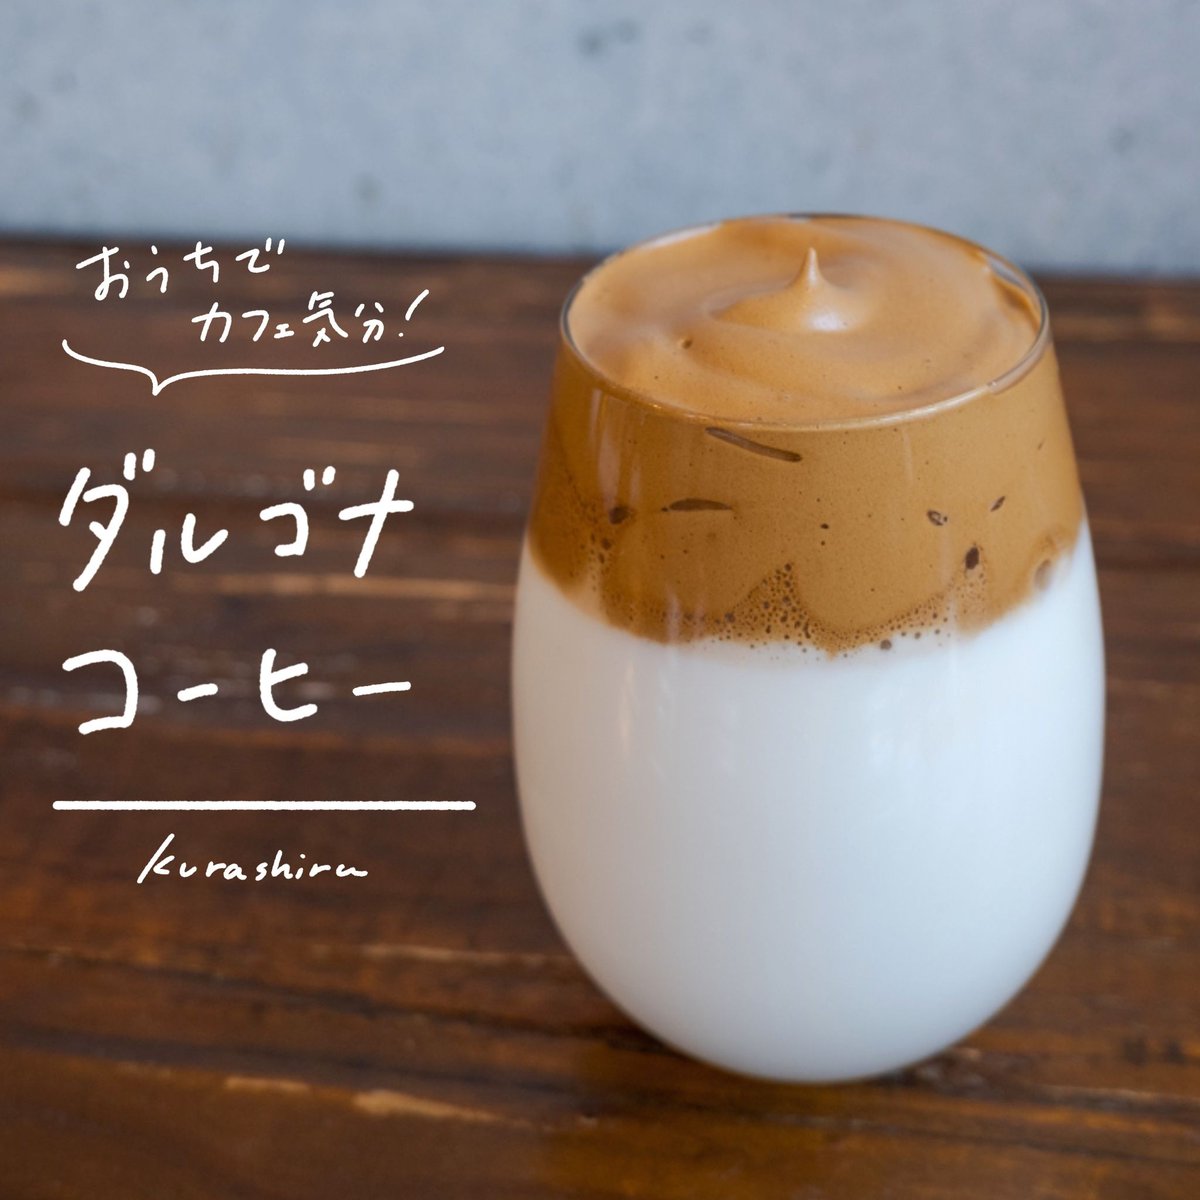 Kurashiru クラシル Auf Twitter おうちがおしゃれカフェに変身 おうちでカフェ気分 ダルゴナコーヒー ボウルにインスタントコーヒー 砂糖 お湯を入れる ハンドミキサーで泡立てる ふわふわな薄茶色になるまで泡立てる 牛乳を注いだグラスに